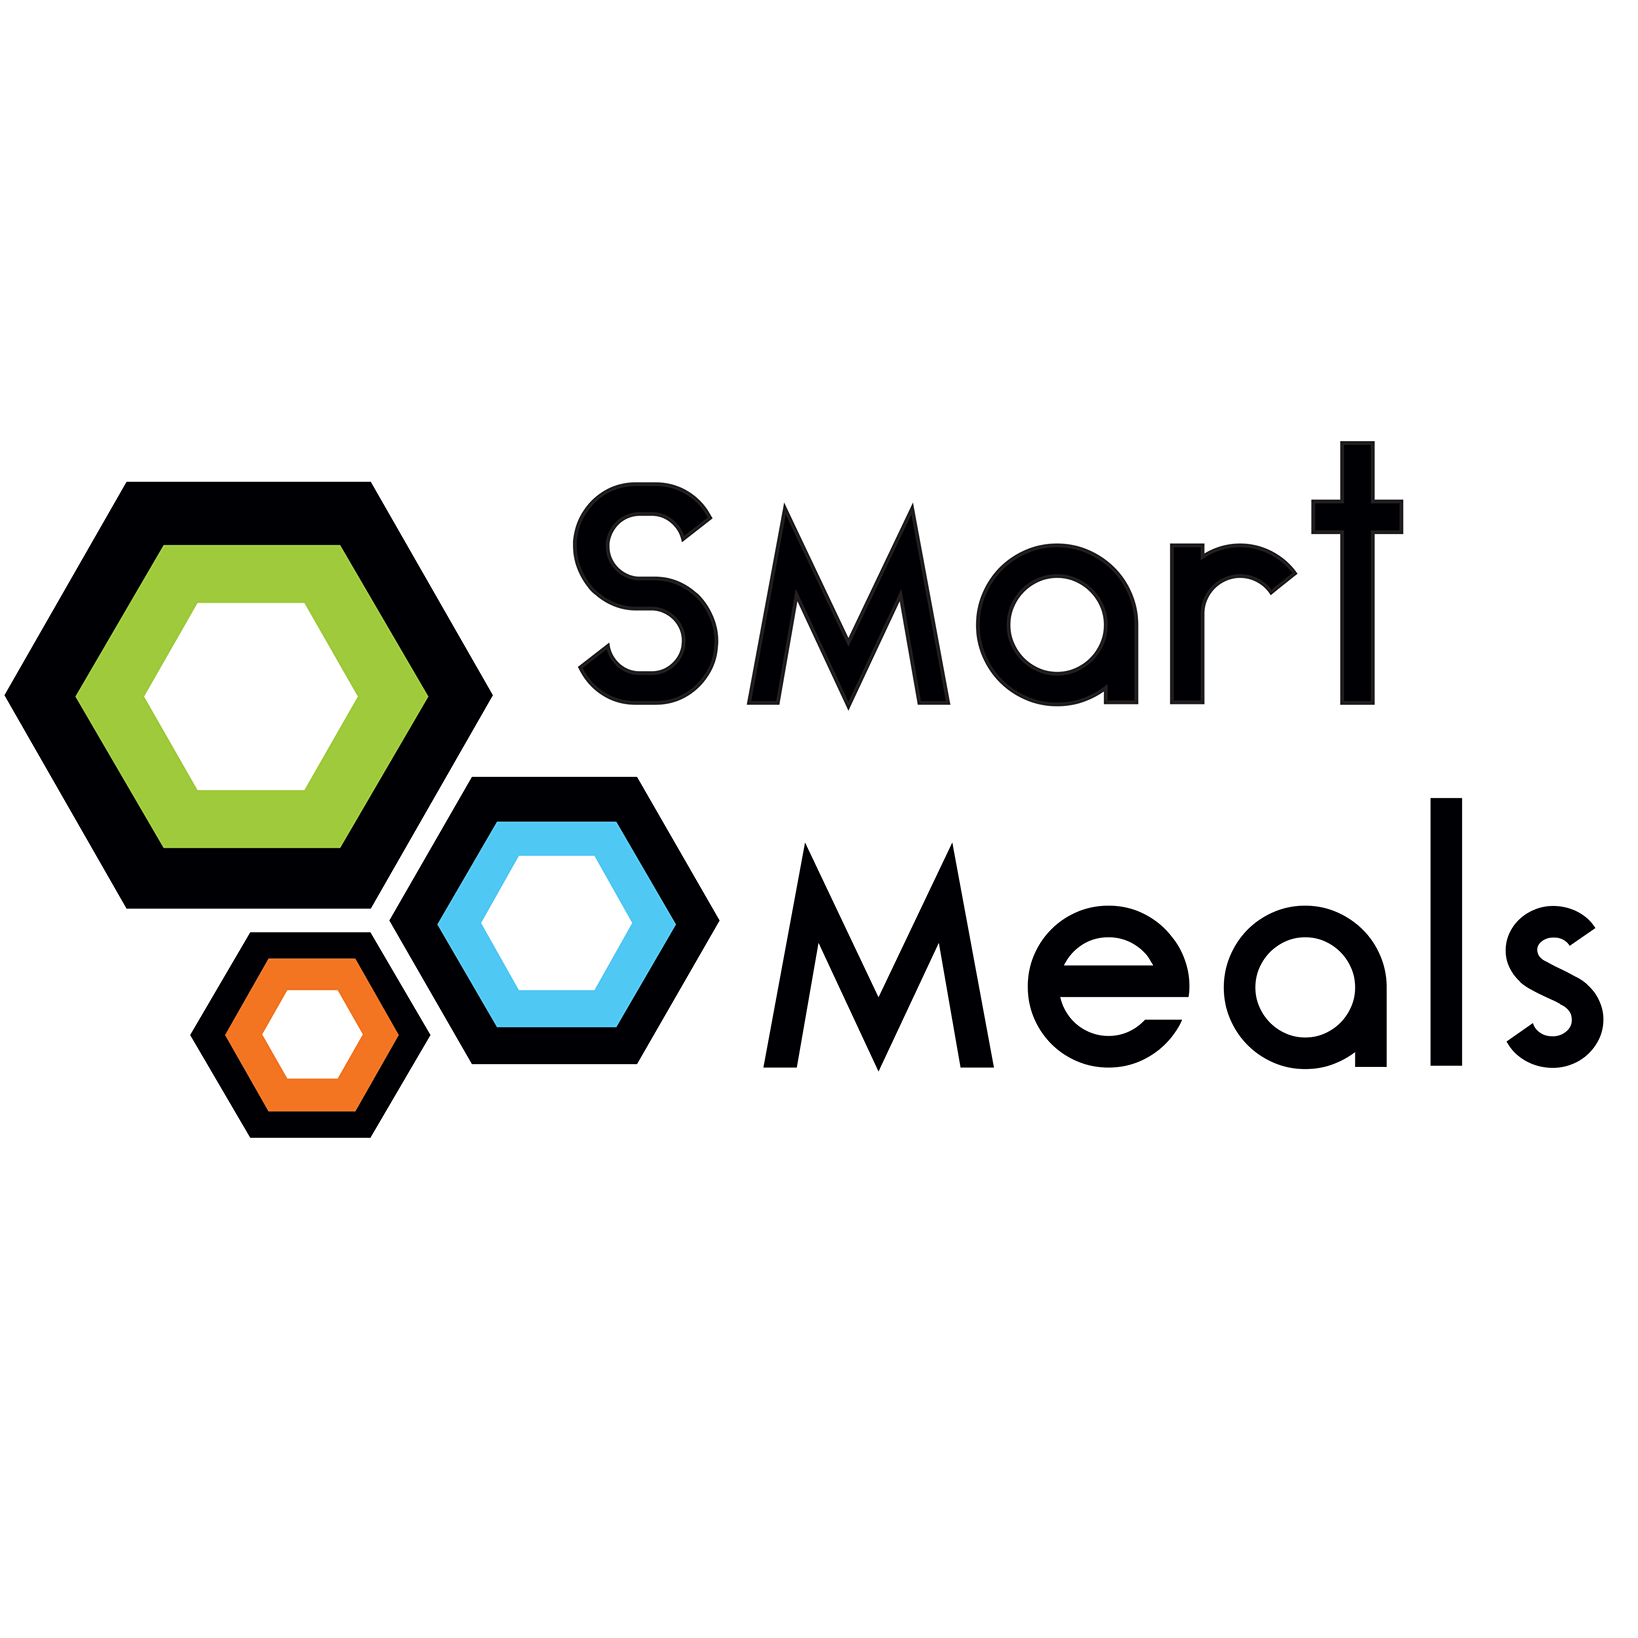 Smart Meals
